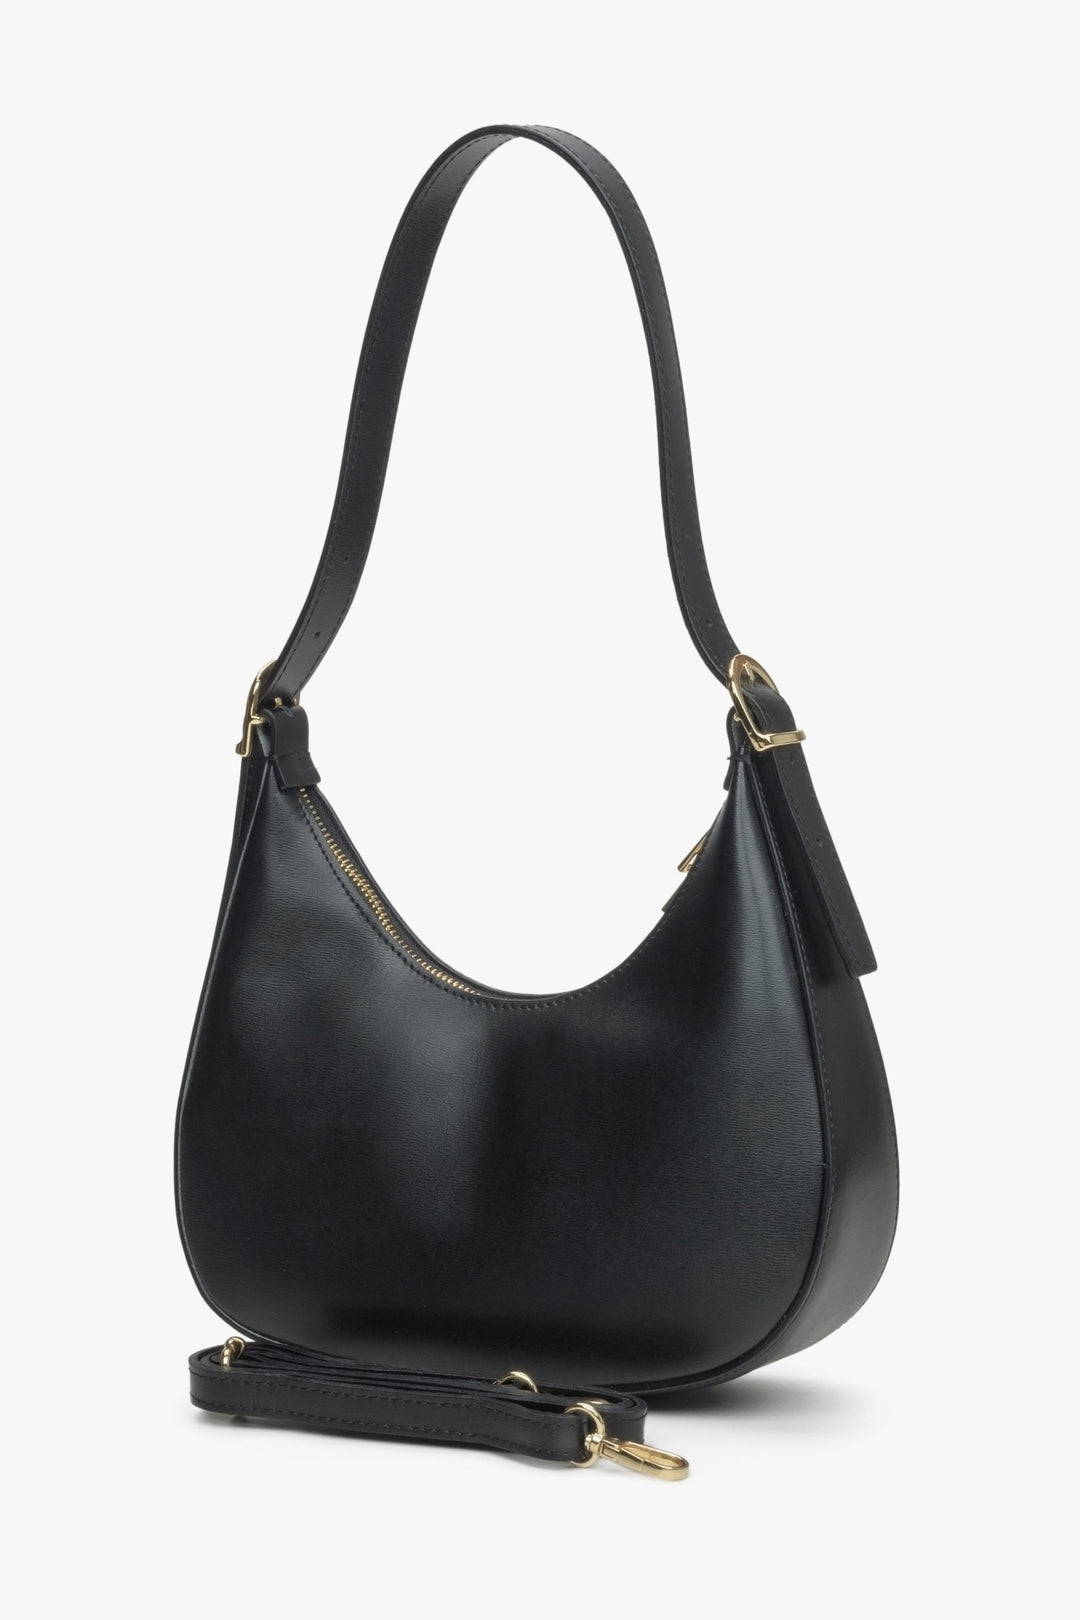 Women's black handbag by Estro.